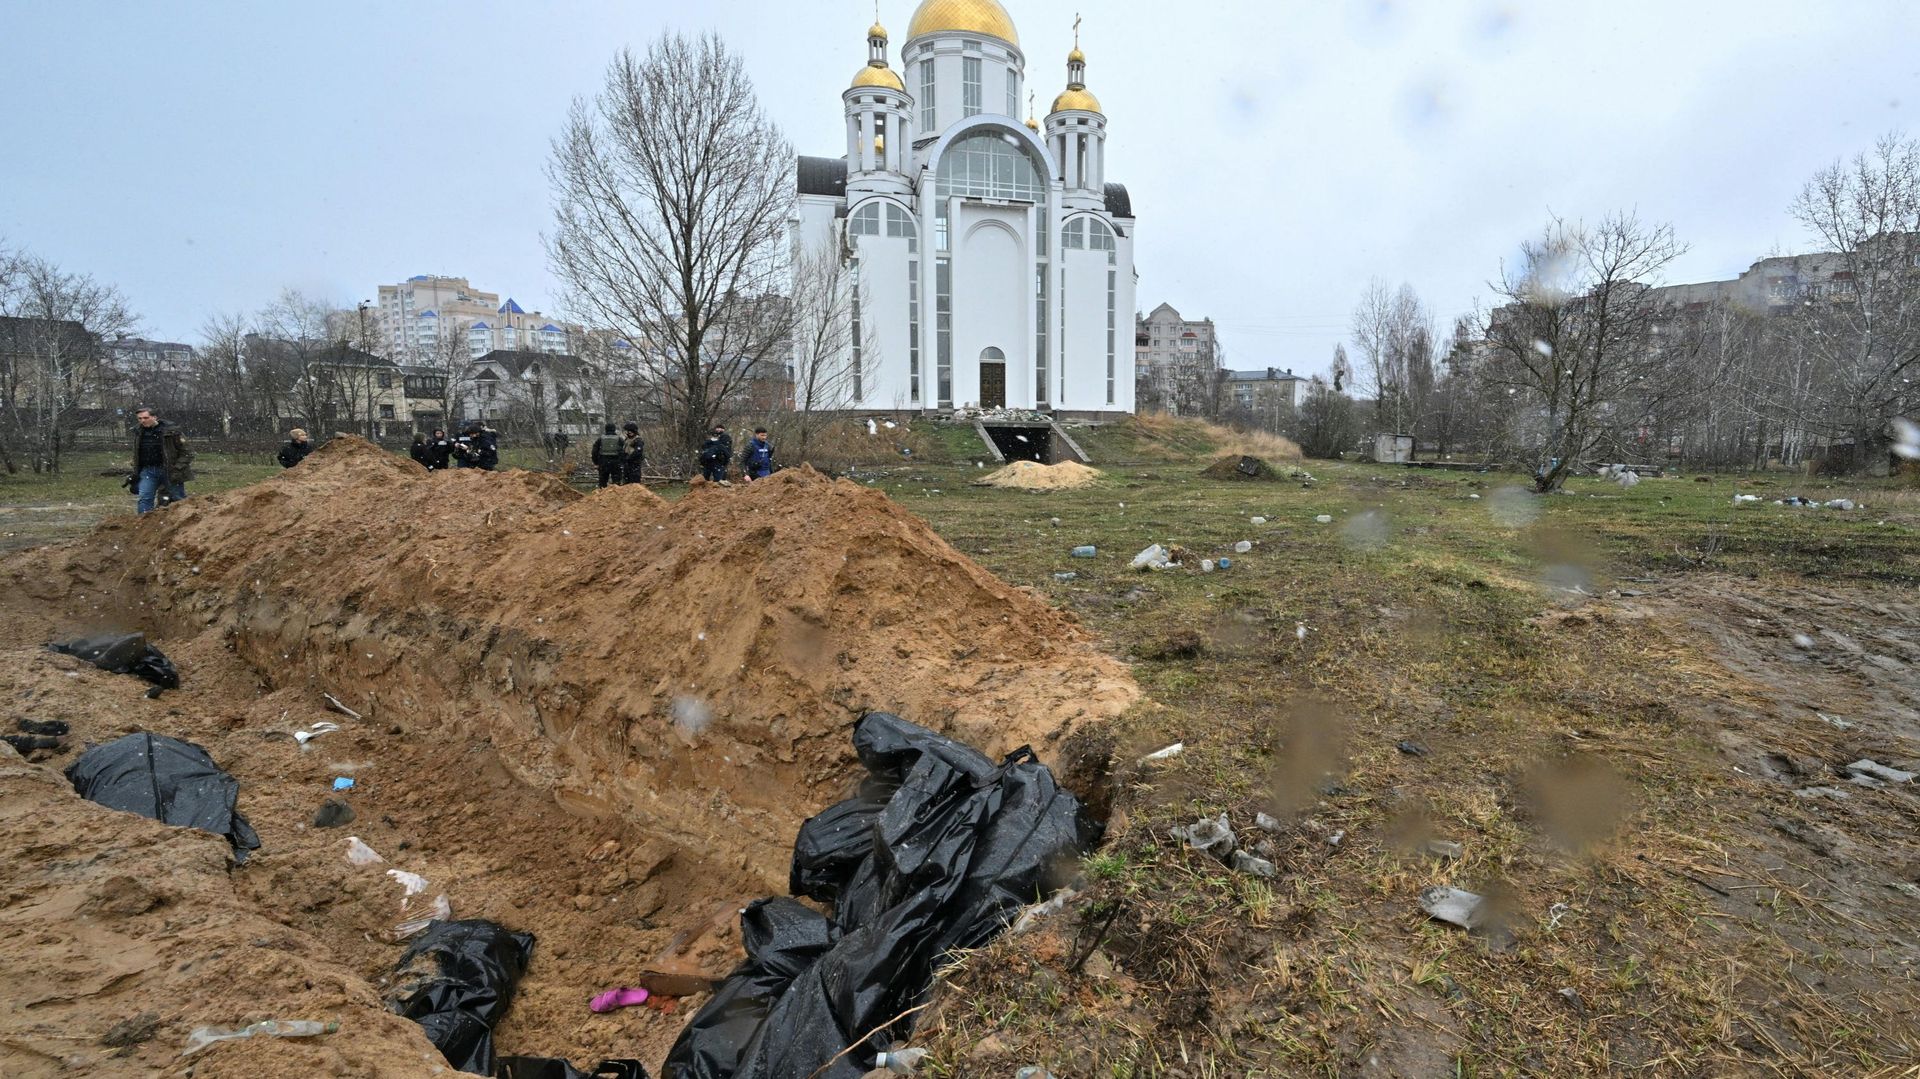 Une fosse commune est vue derrière une église dans la ville de Bucha, au nord-ouest de la capitale ukrainienne Kiev, le 3 avril 2022. Le maire de la ville, Anatoly Fedoruk, a déclaré à l’AFP que 280 autres corps avaient été enterrés dans des fosses commun